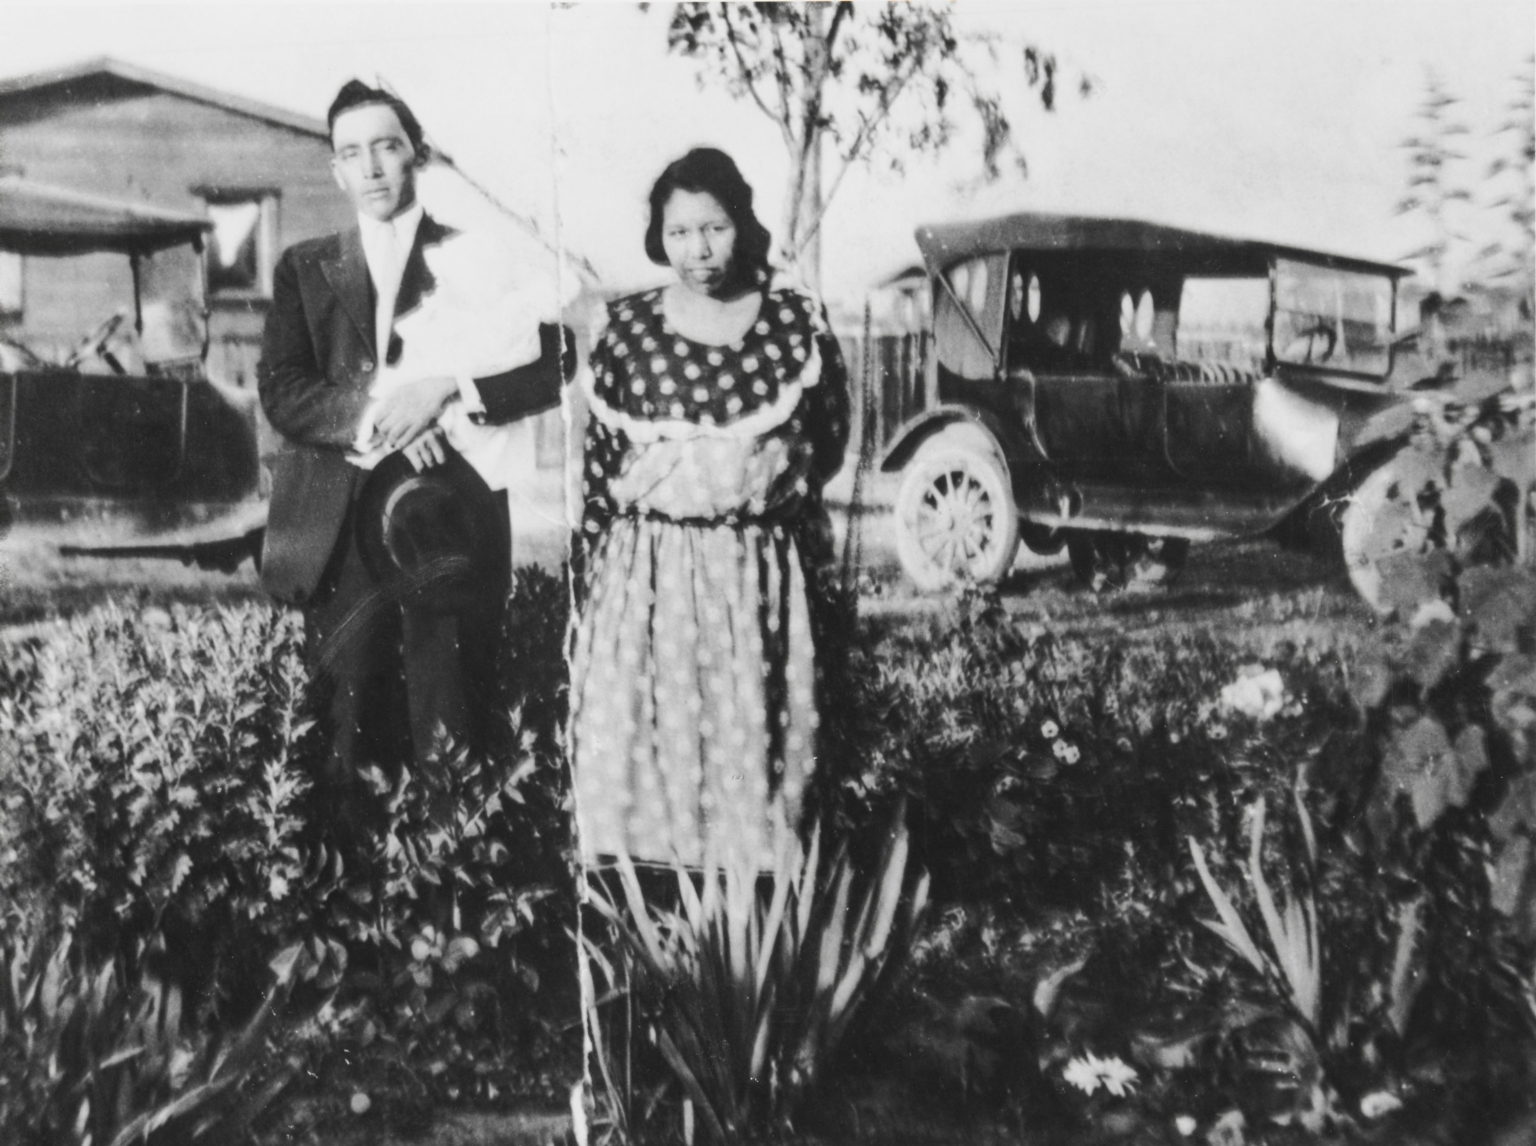 Manuel Salazar and Vera Salazar (née Ortega) with their baby, Vivian : 1920s.